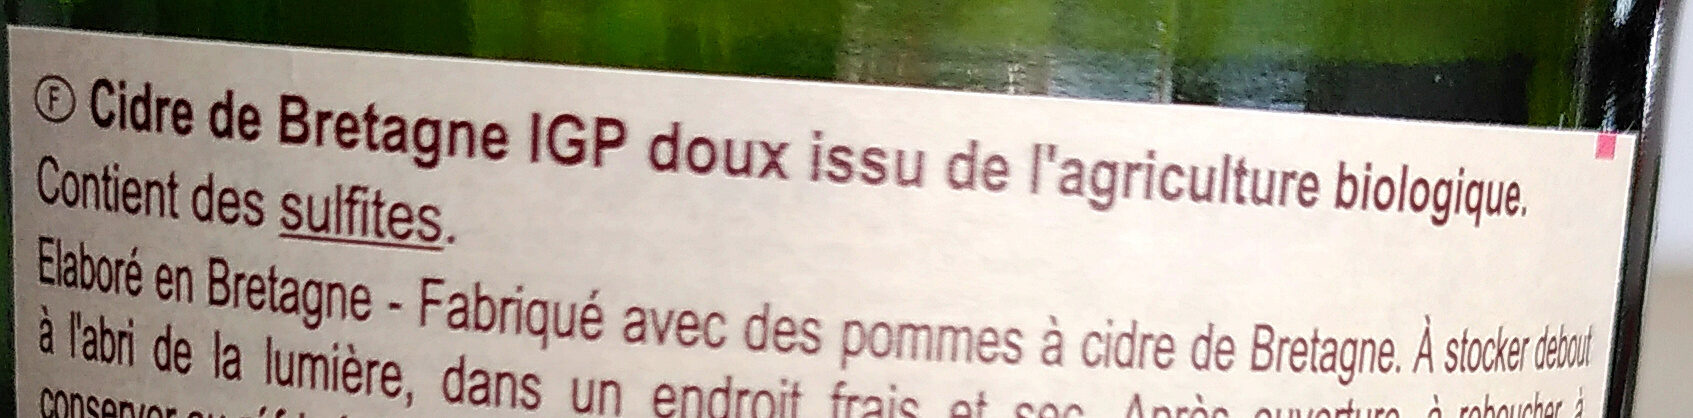 Cidre Bio DOUX gazéifié - Ingredients - fr